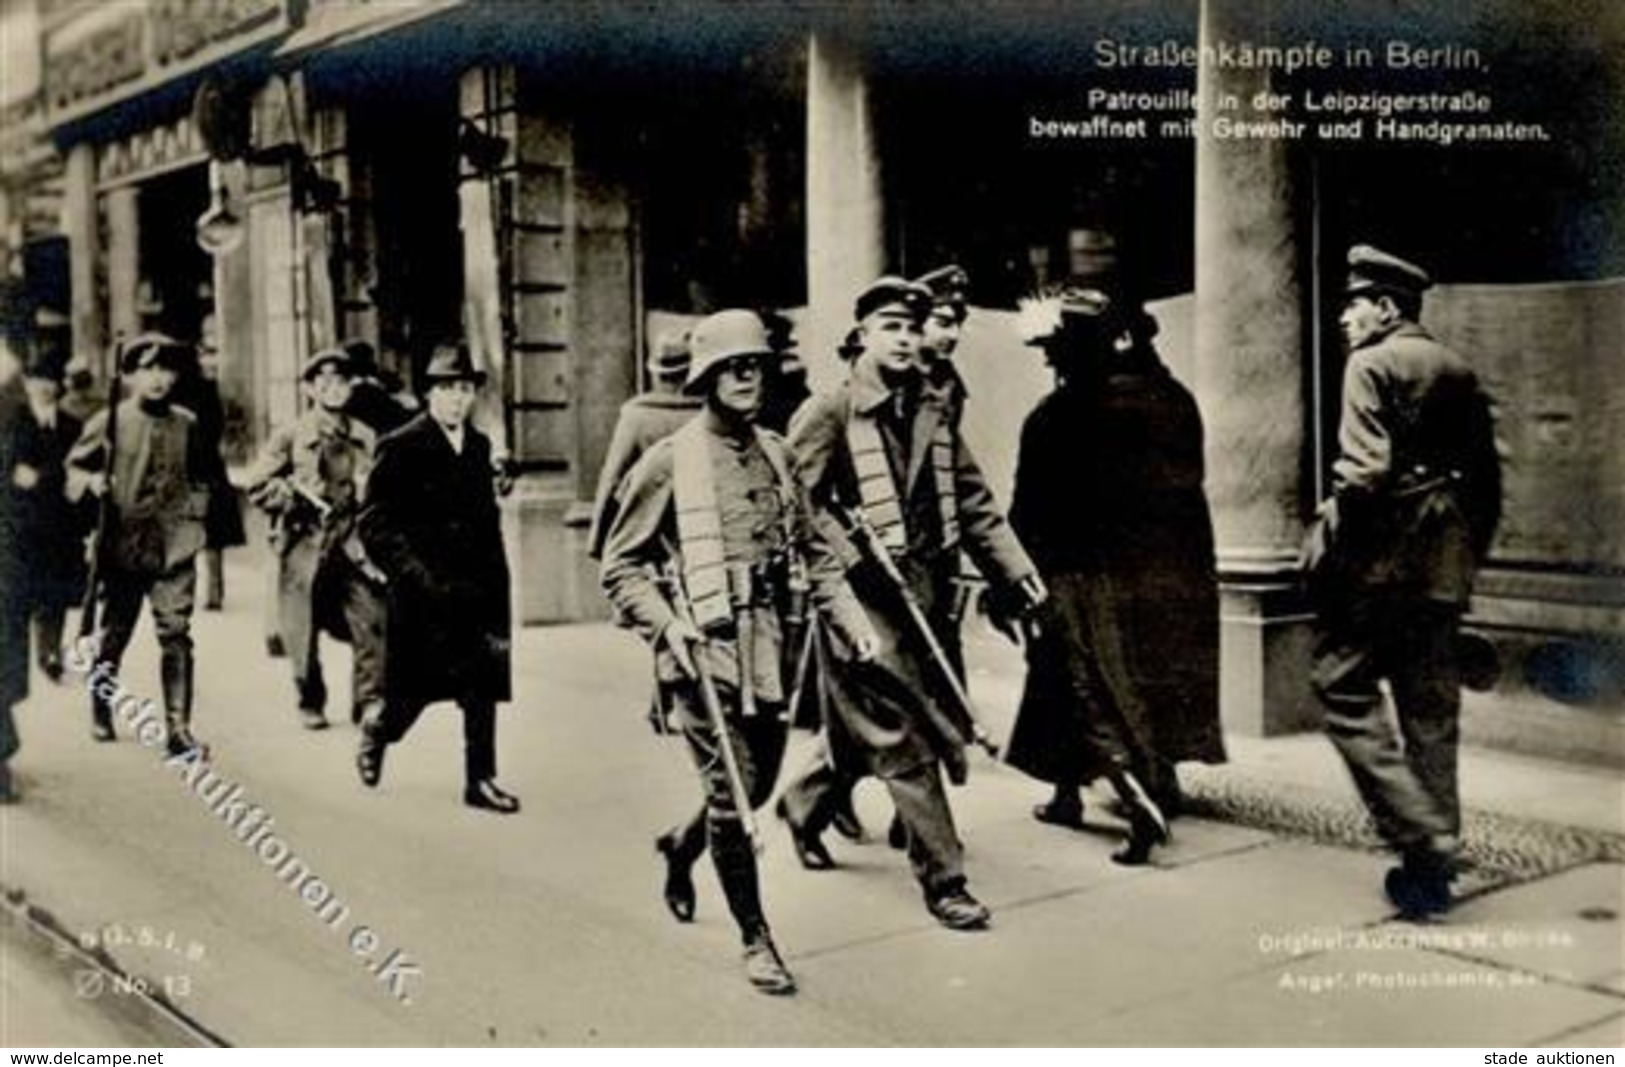 REVOLUTION BERLIN 1918/1919 - Straßenkämpfe In Berlin - Patrouille In Der Leipzigerstrasse Bewaffnet Mit Gewehr Und Hand - Histoire